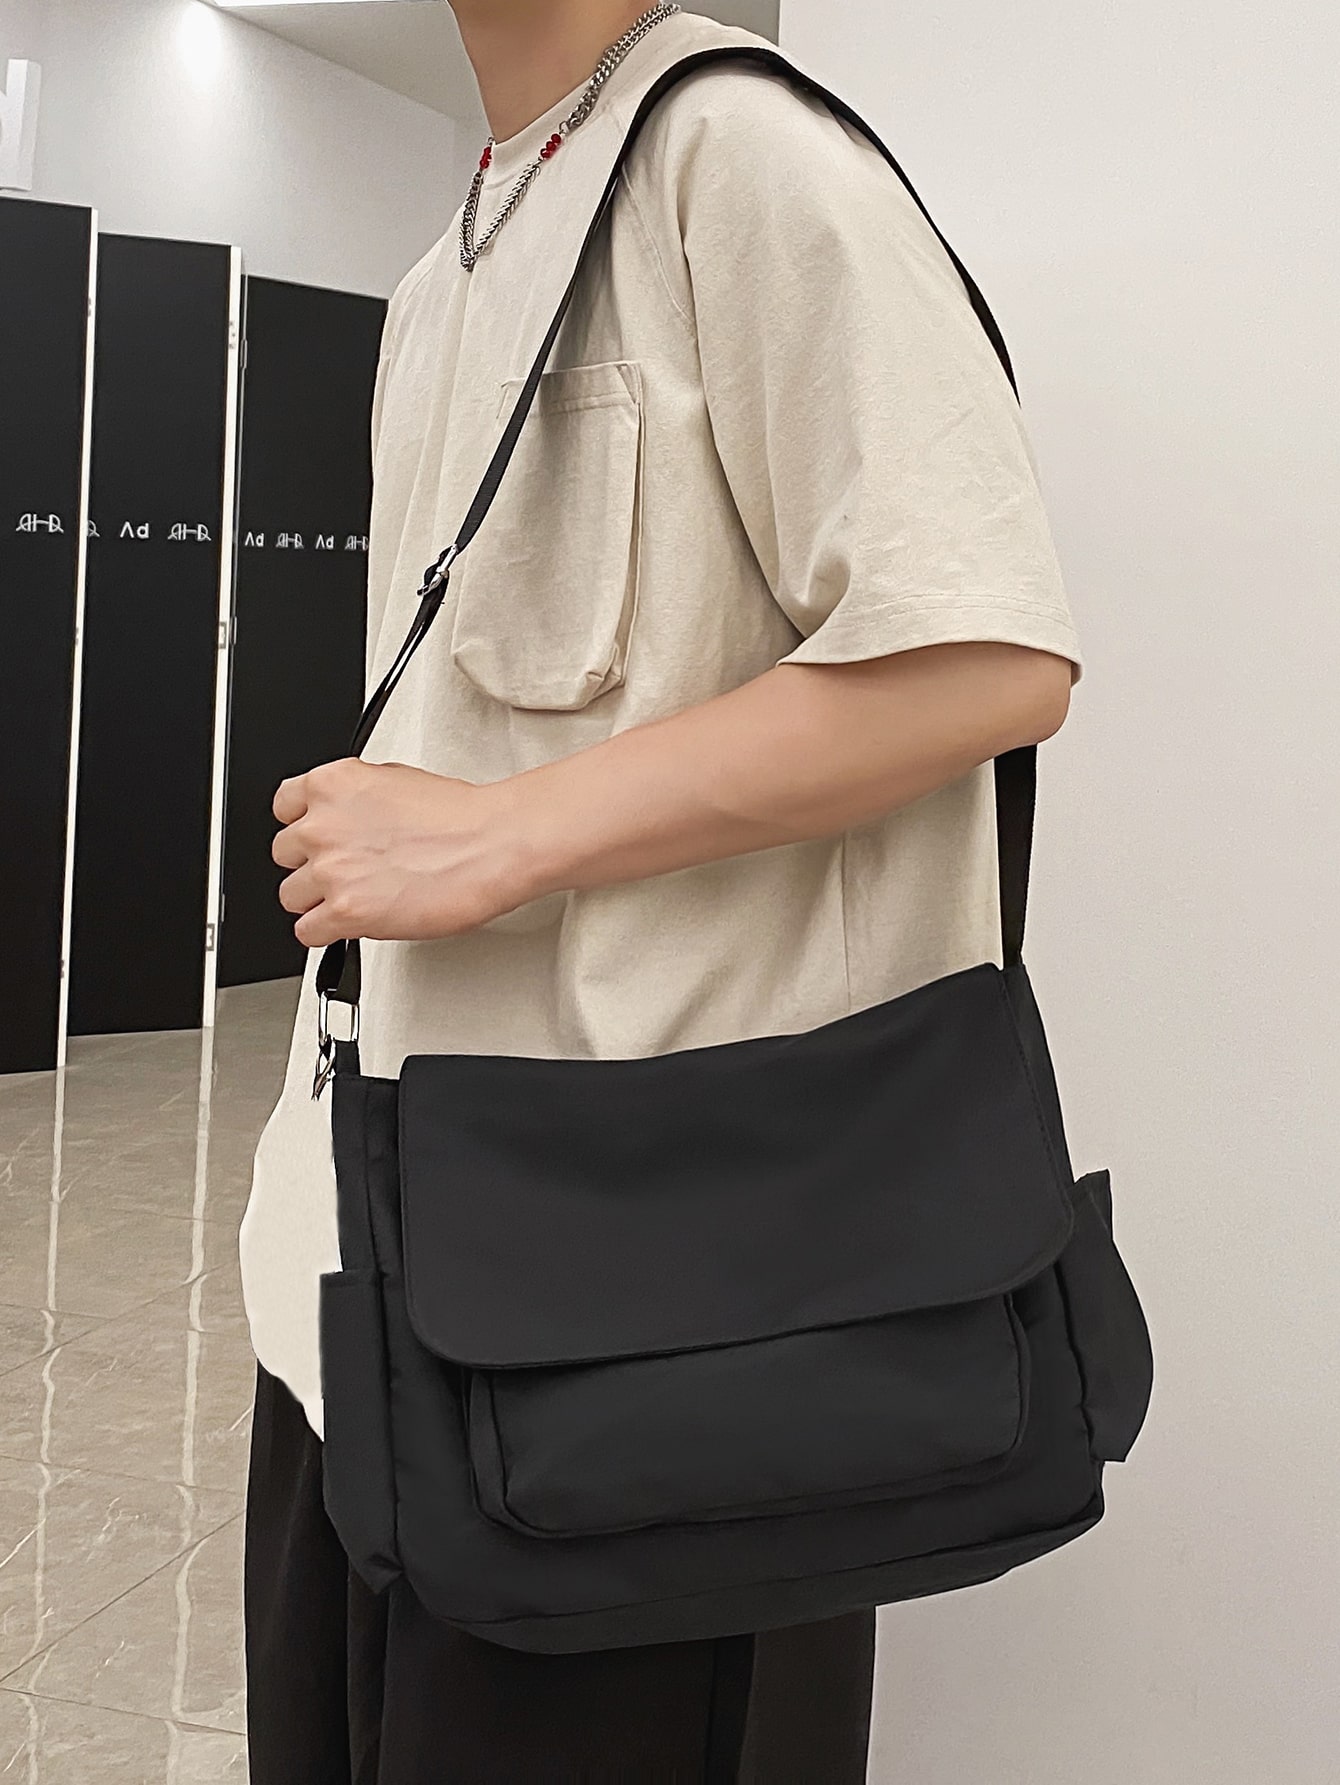 ранцевый треугольный рюкзак с рисунком в виде маджонга рюкзак слинг canfeng дорожный походный рюкзак веревочная сумка через плечо 1 шт. Мужская нагрудная сумка в стиле Ins, черный